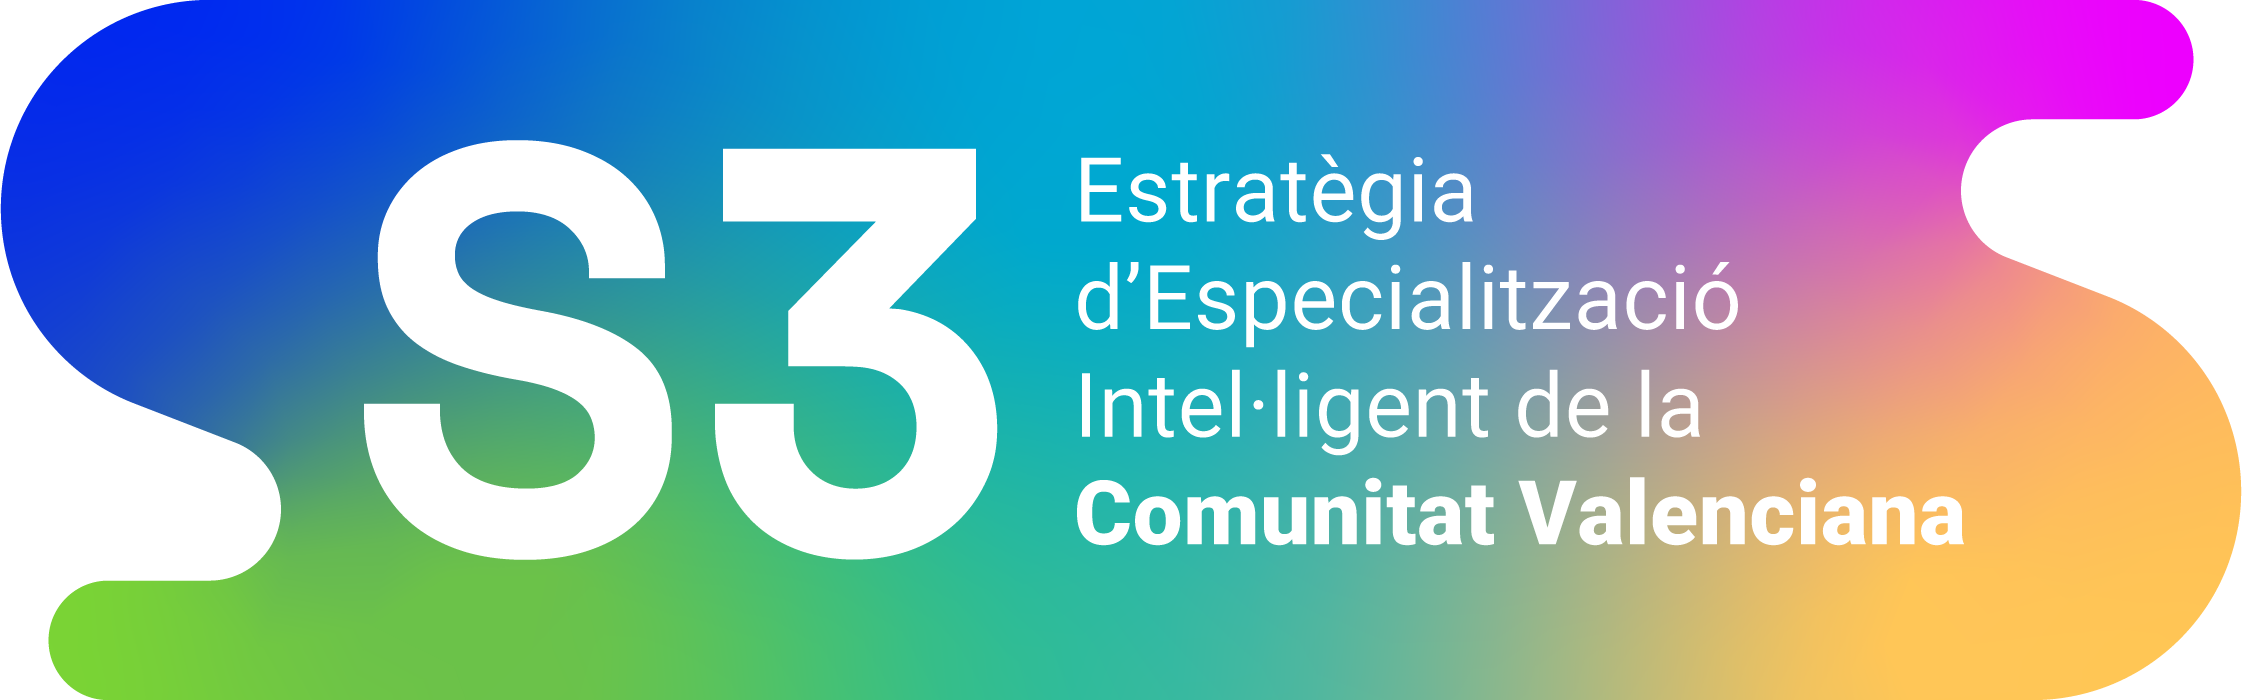 Estratègia d'especialització intel·ligent de la Comunitat Valenciana